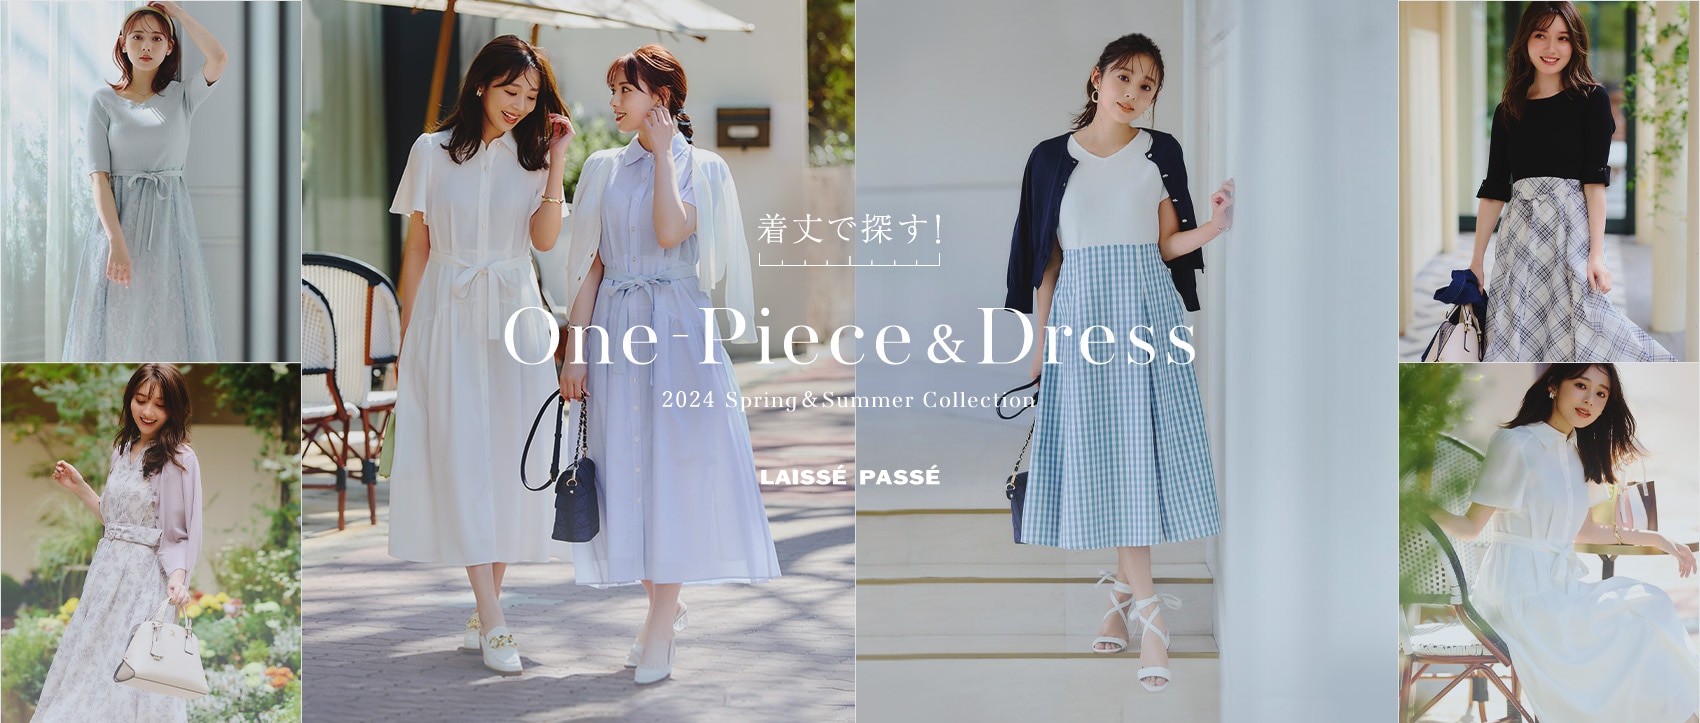 着丈で探す！ One-Piece＆Dress 2024 Spring&Summer Collection LAISSE PASSE